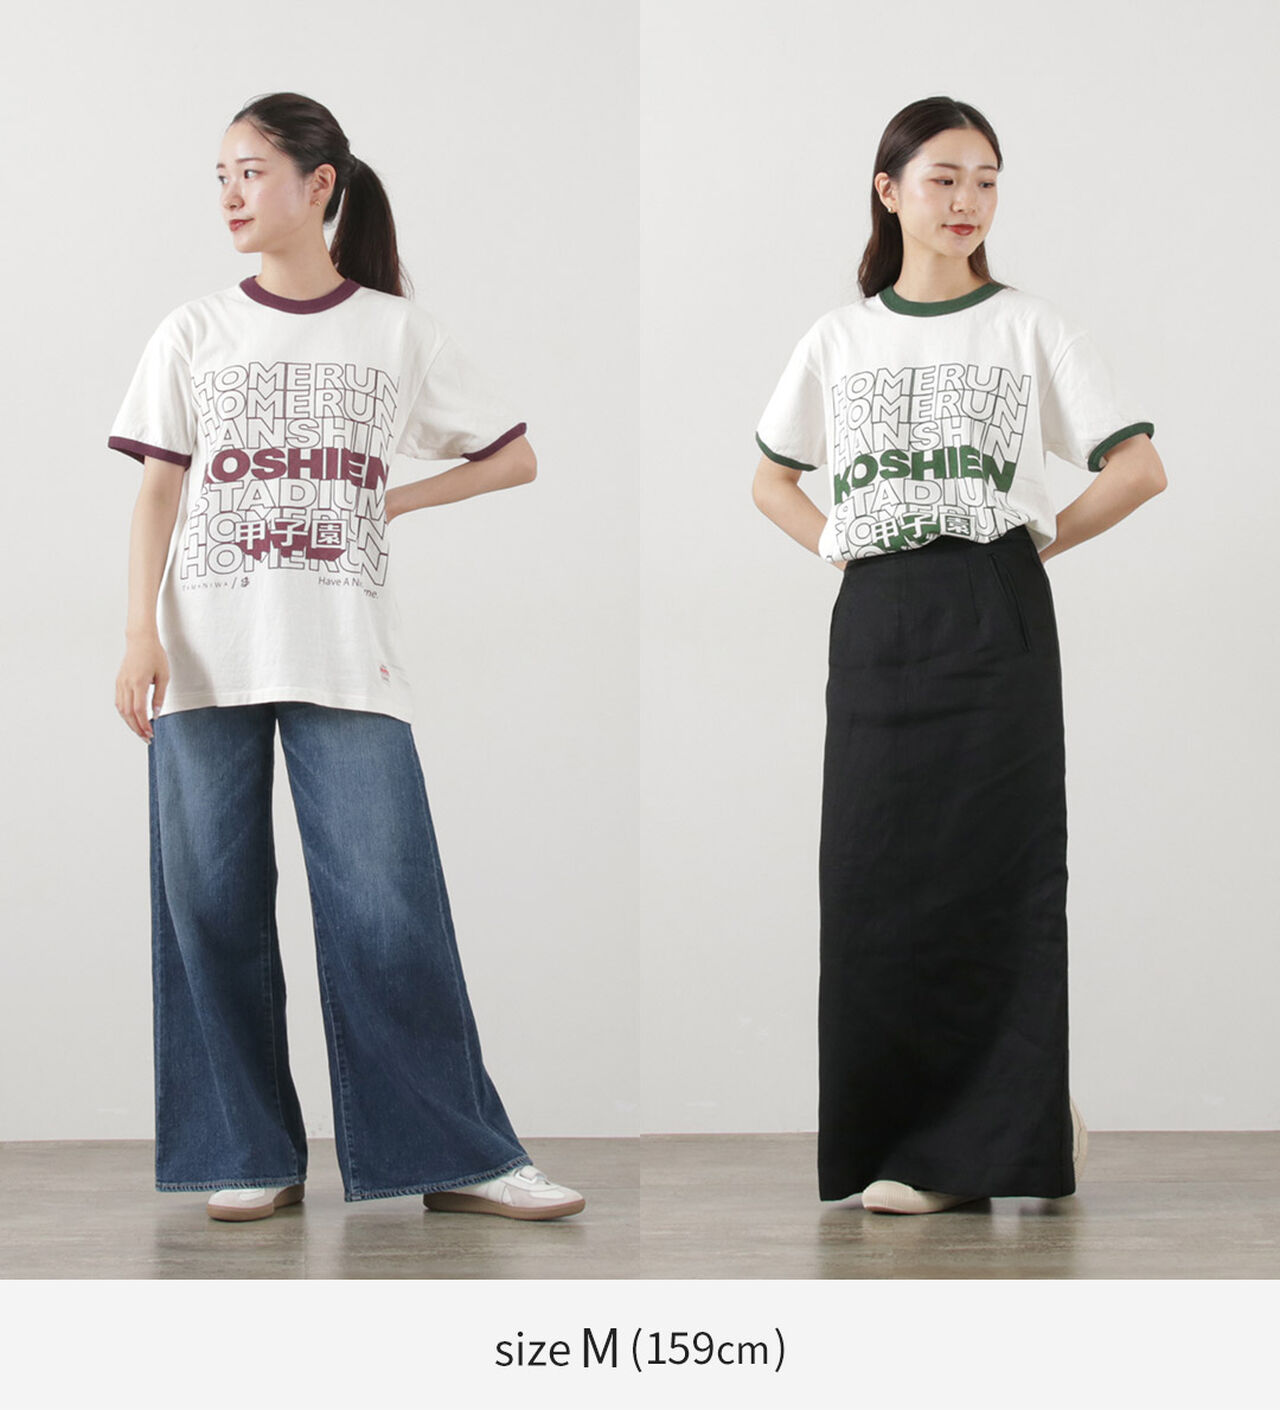 Koshien Home Run T-shirt,, large image number 5